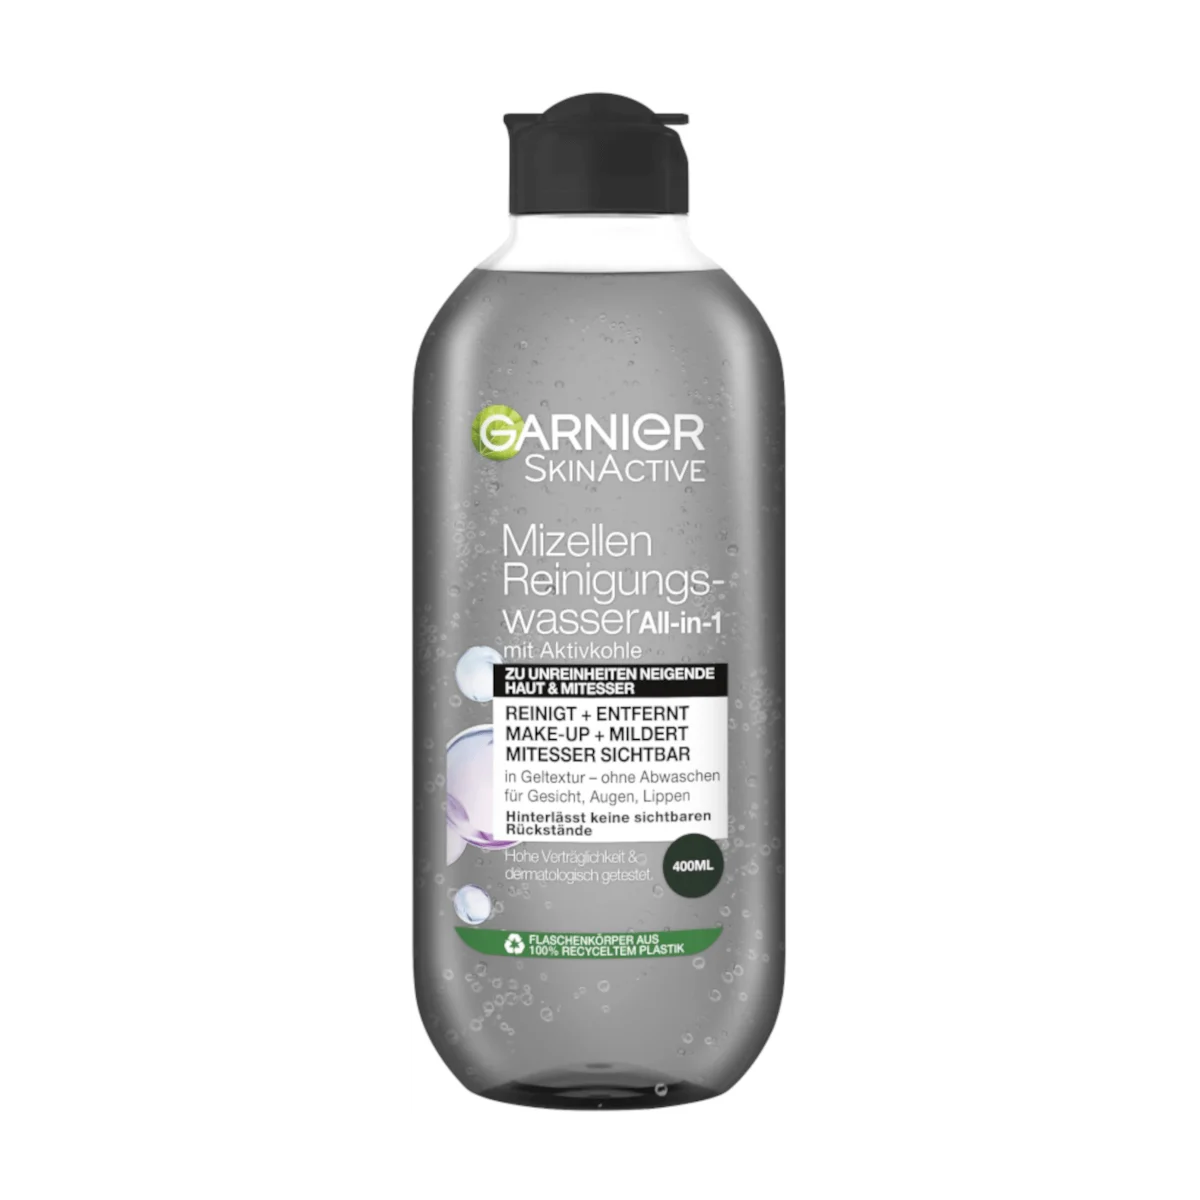 Garnier SkinActive Mizellen Reinigungswasser mit Aktivkohle, 400 ml